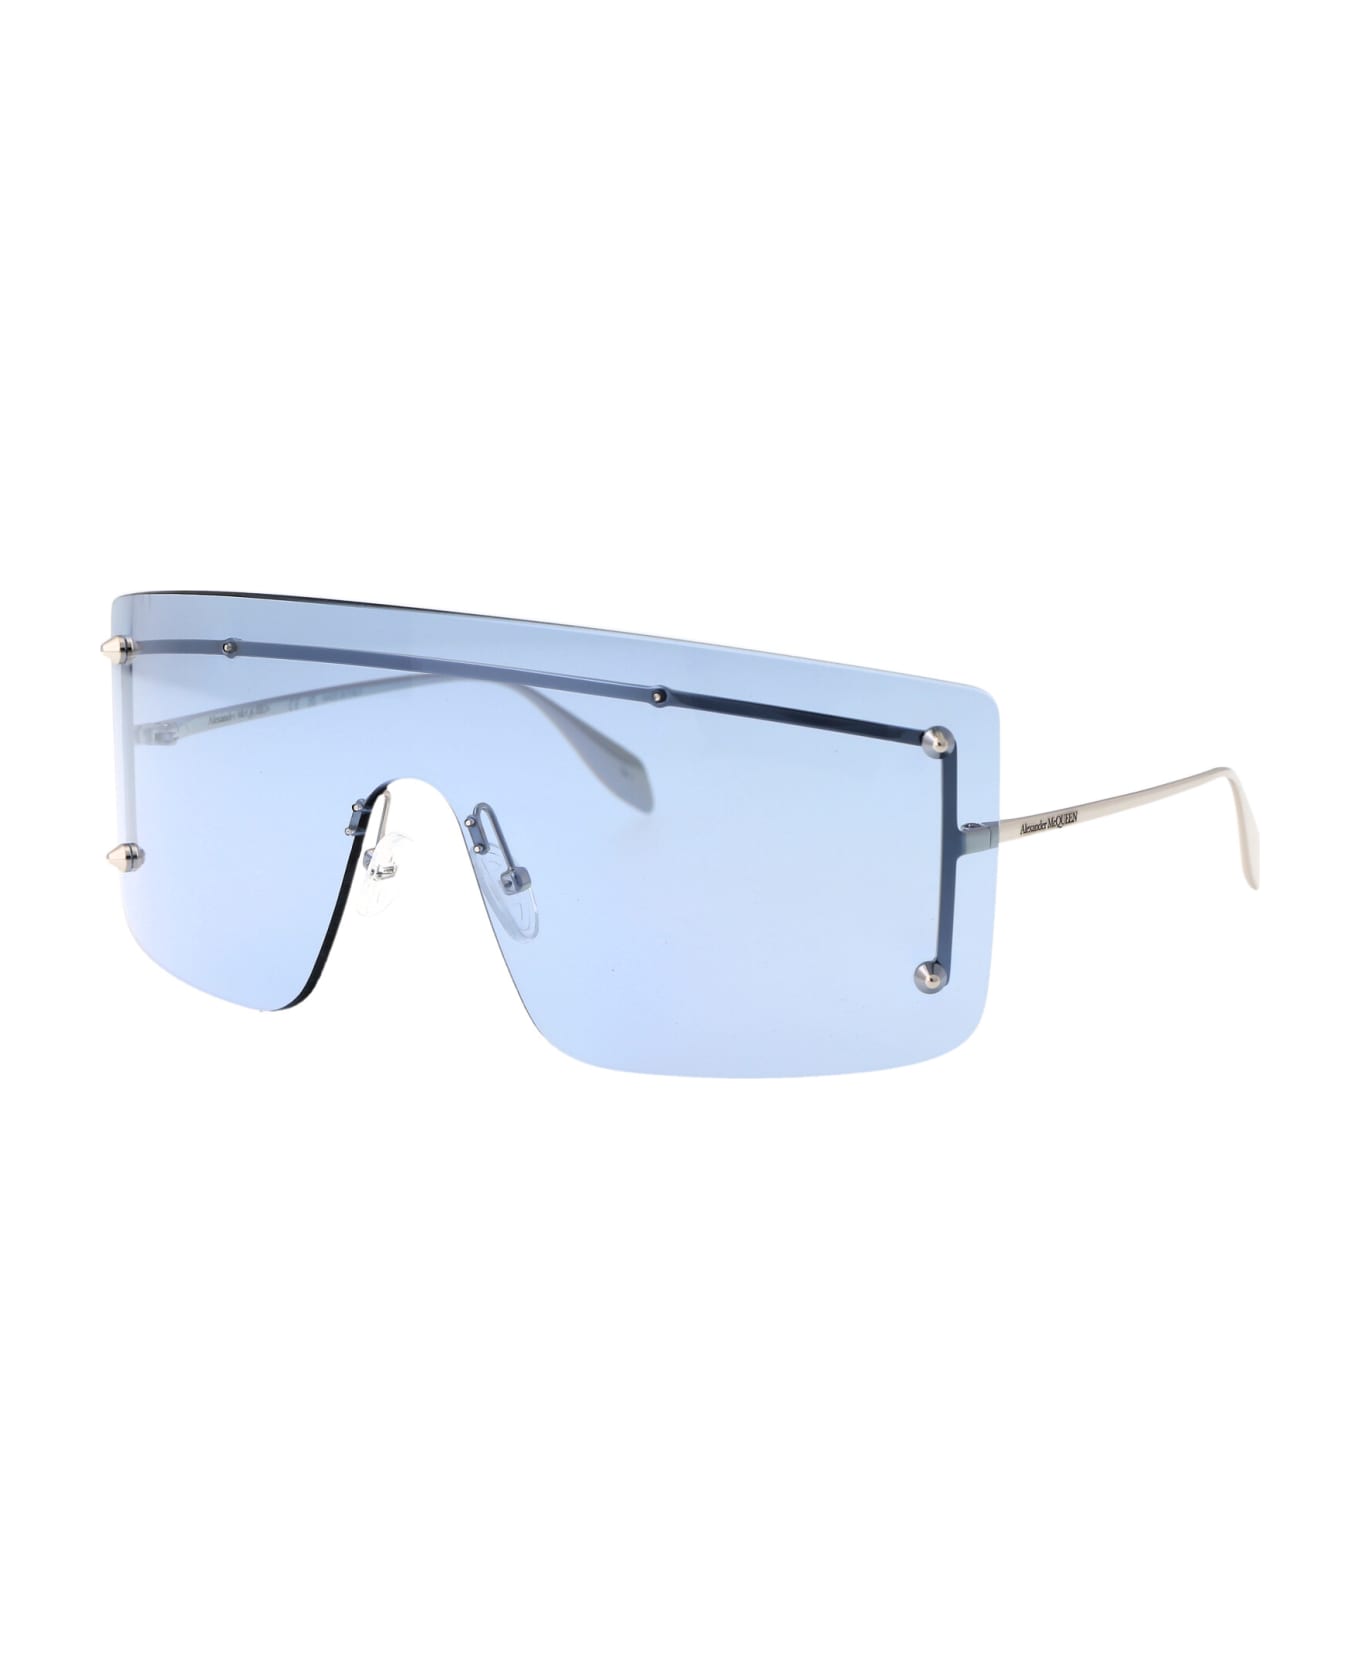 Alexander McQueen Eyewear Am0412s Sunglasses - 004 SILVER SILVER LIGHT BLUE